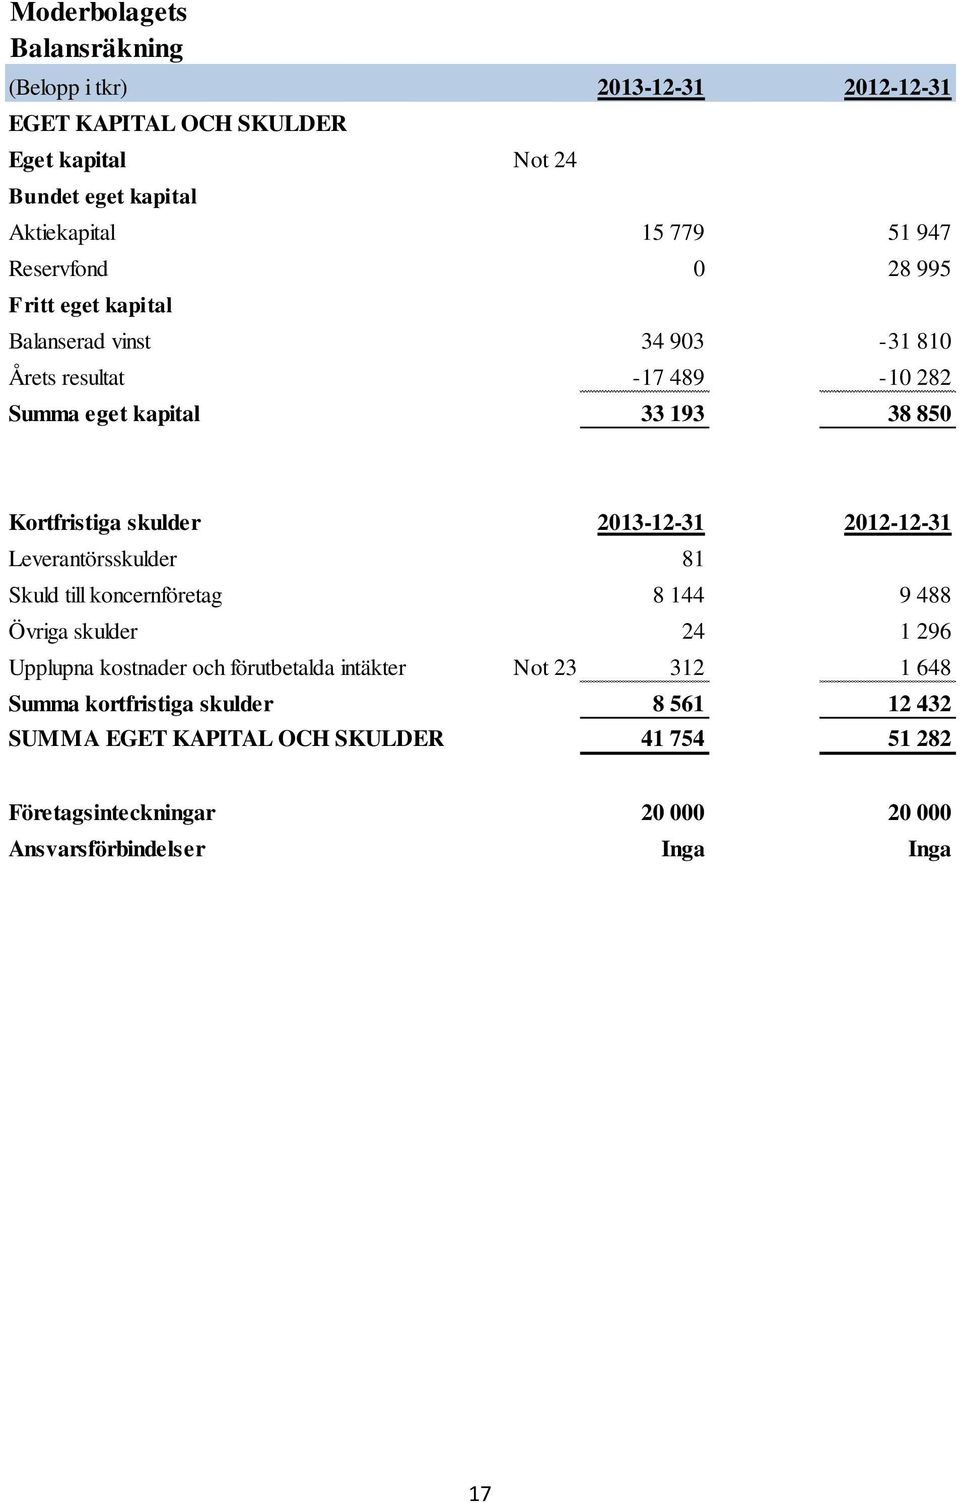 2013-12-31 2012-12-31 Leverantörsskulder 81 Skuld till koncernföretag 8 144 9 488 Övriga skulder 24 1 296 Upplupna kostnader och förutbetalda intäkter Not 23